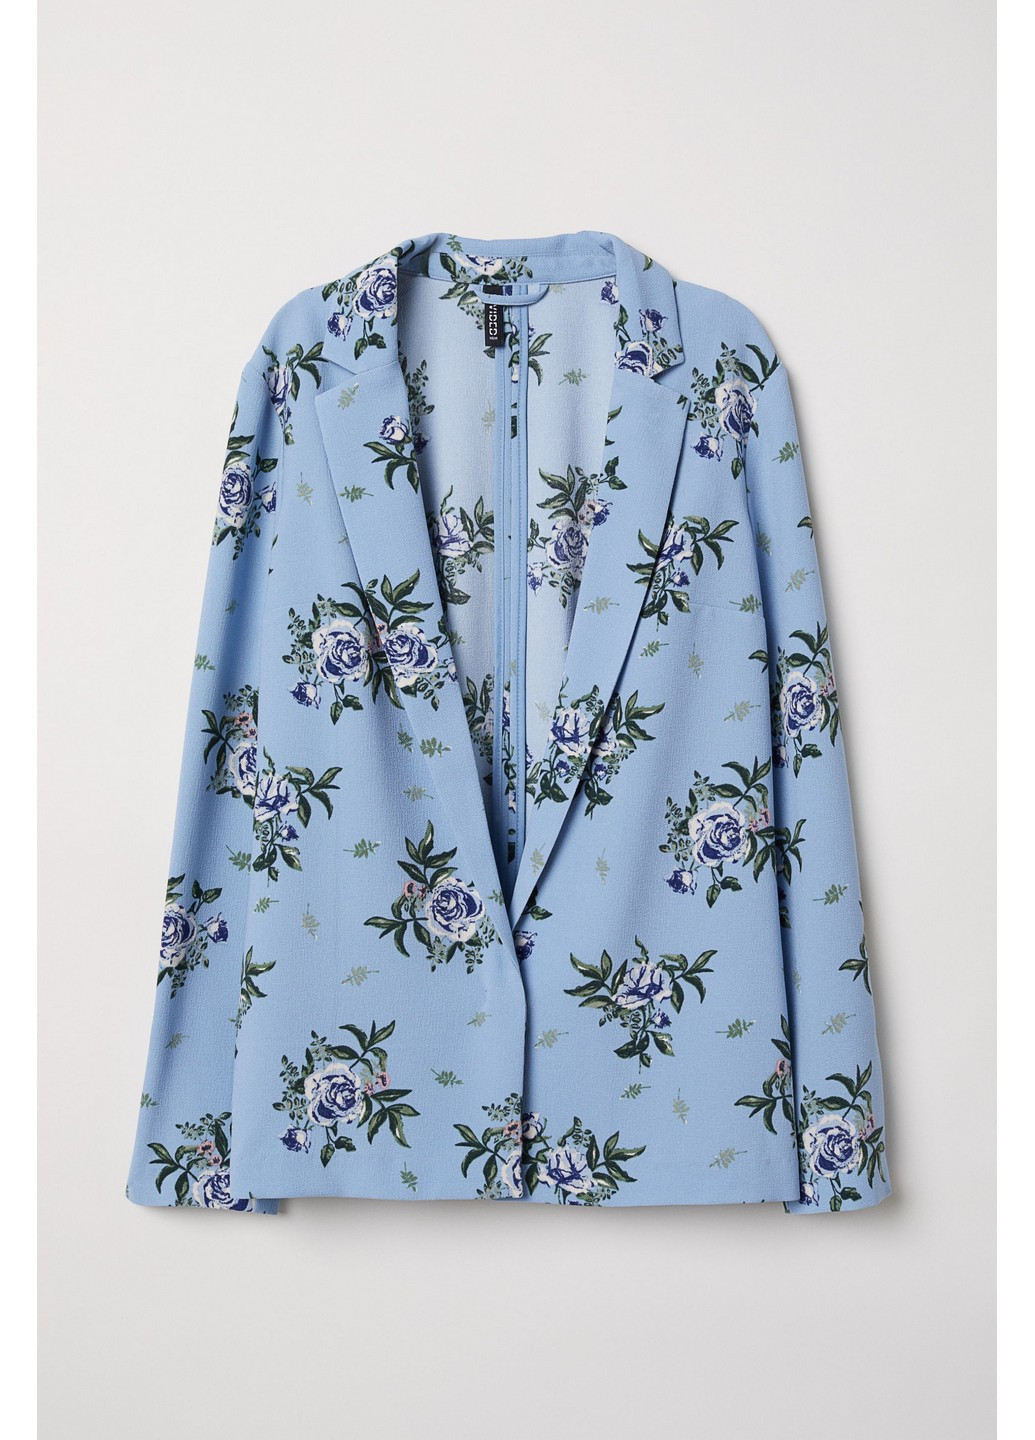 Голубой женский жакет H&M с цветочным узором - демисезонный